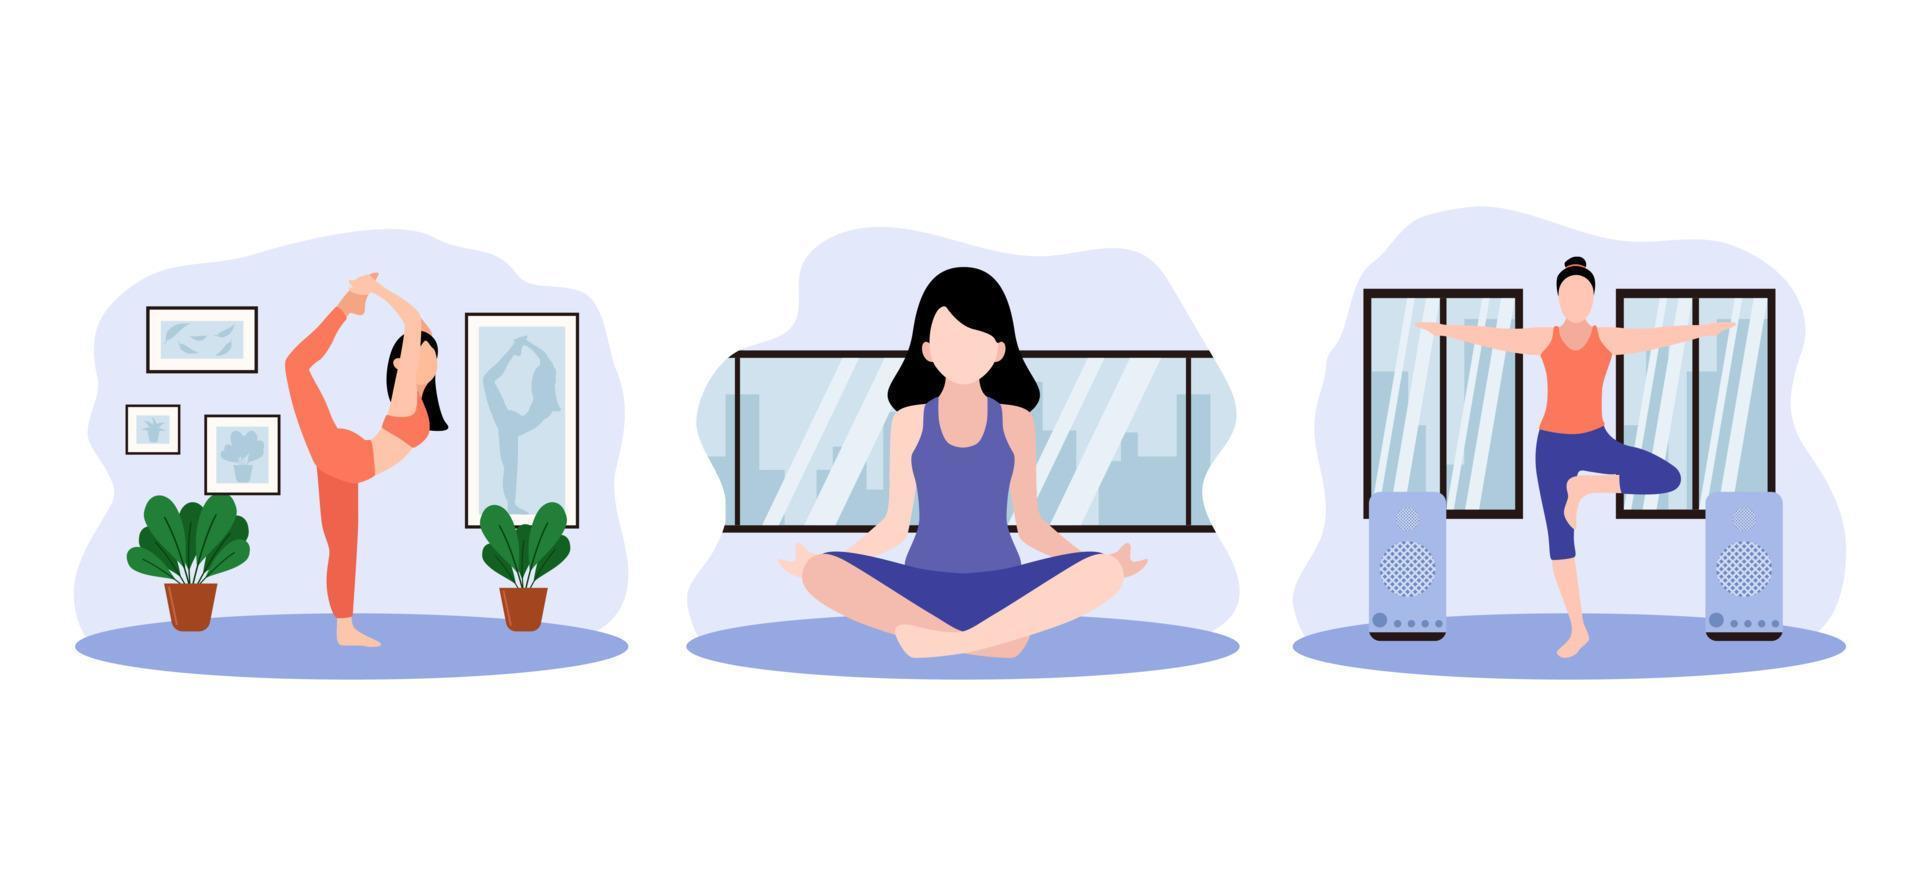 Yoga Meditation Scene Flat Bundle Design vector